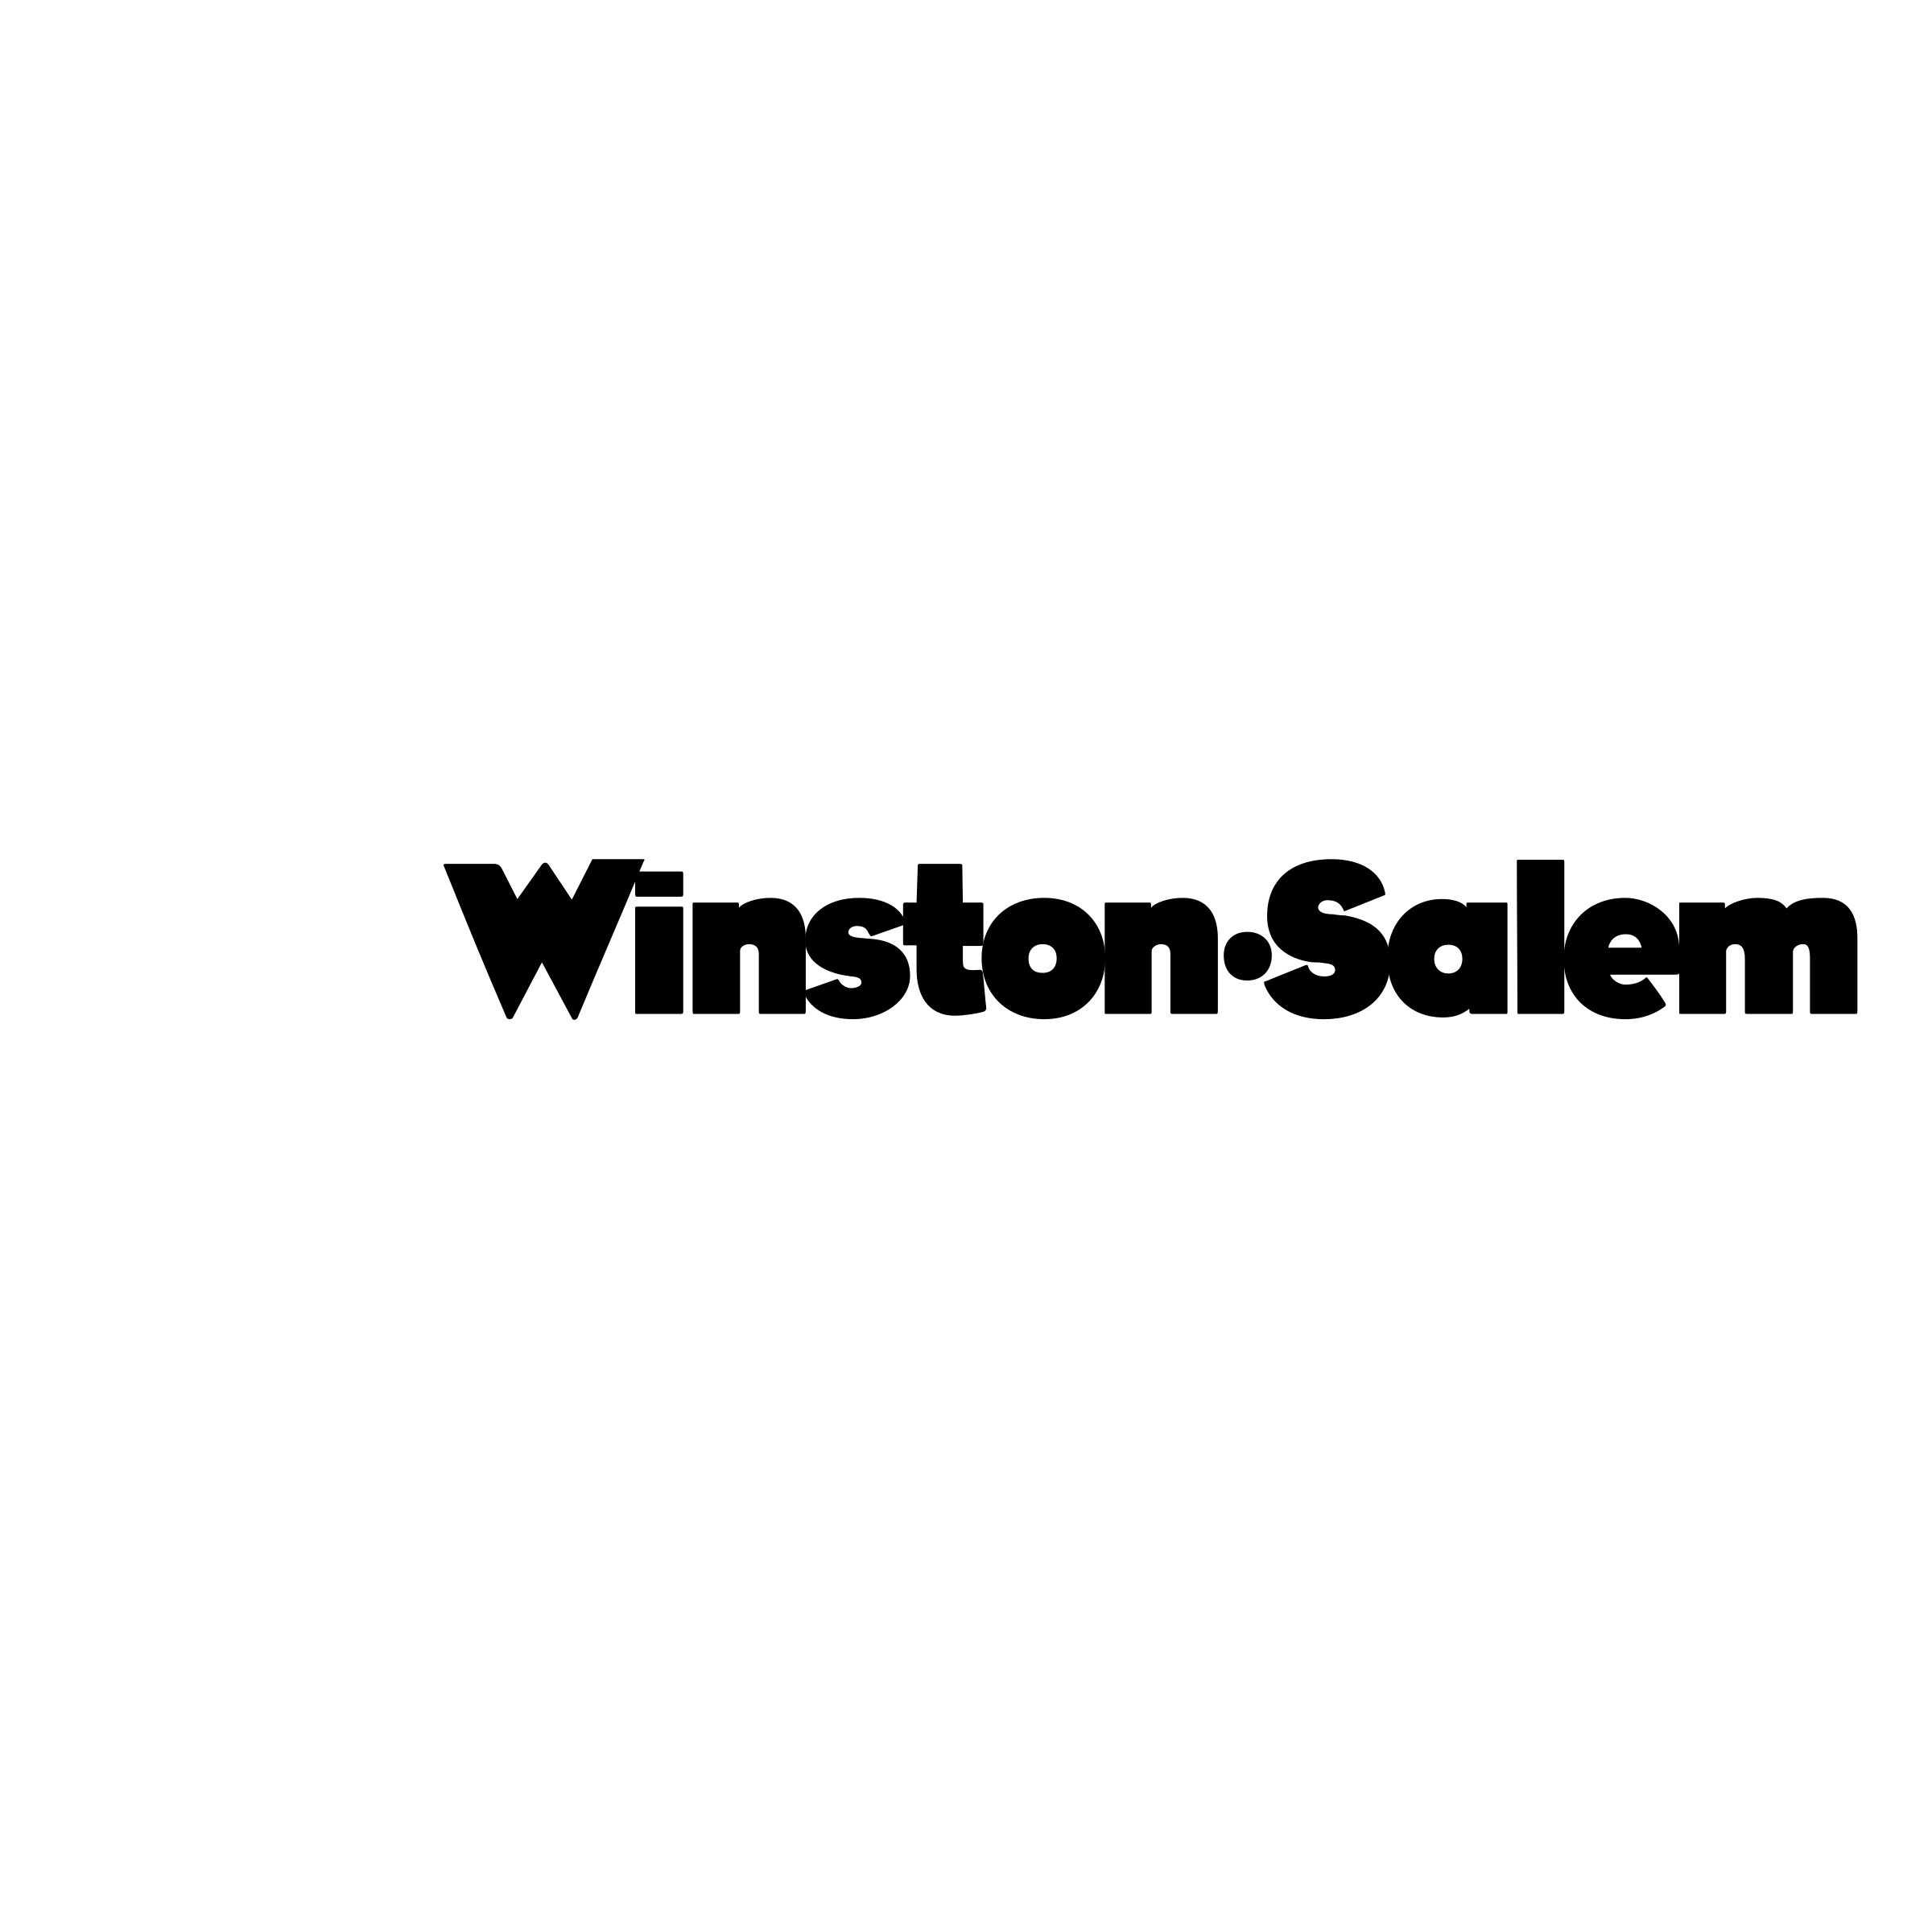 Salem Logo - O! Winston Salem Logo PNG Transparent & SVG Vector - Freebie Supply